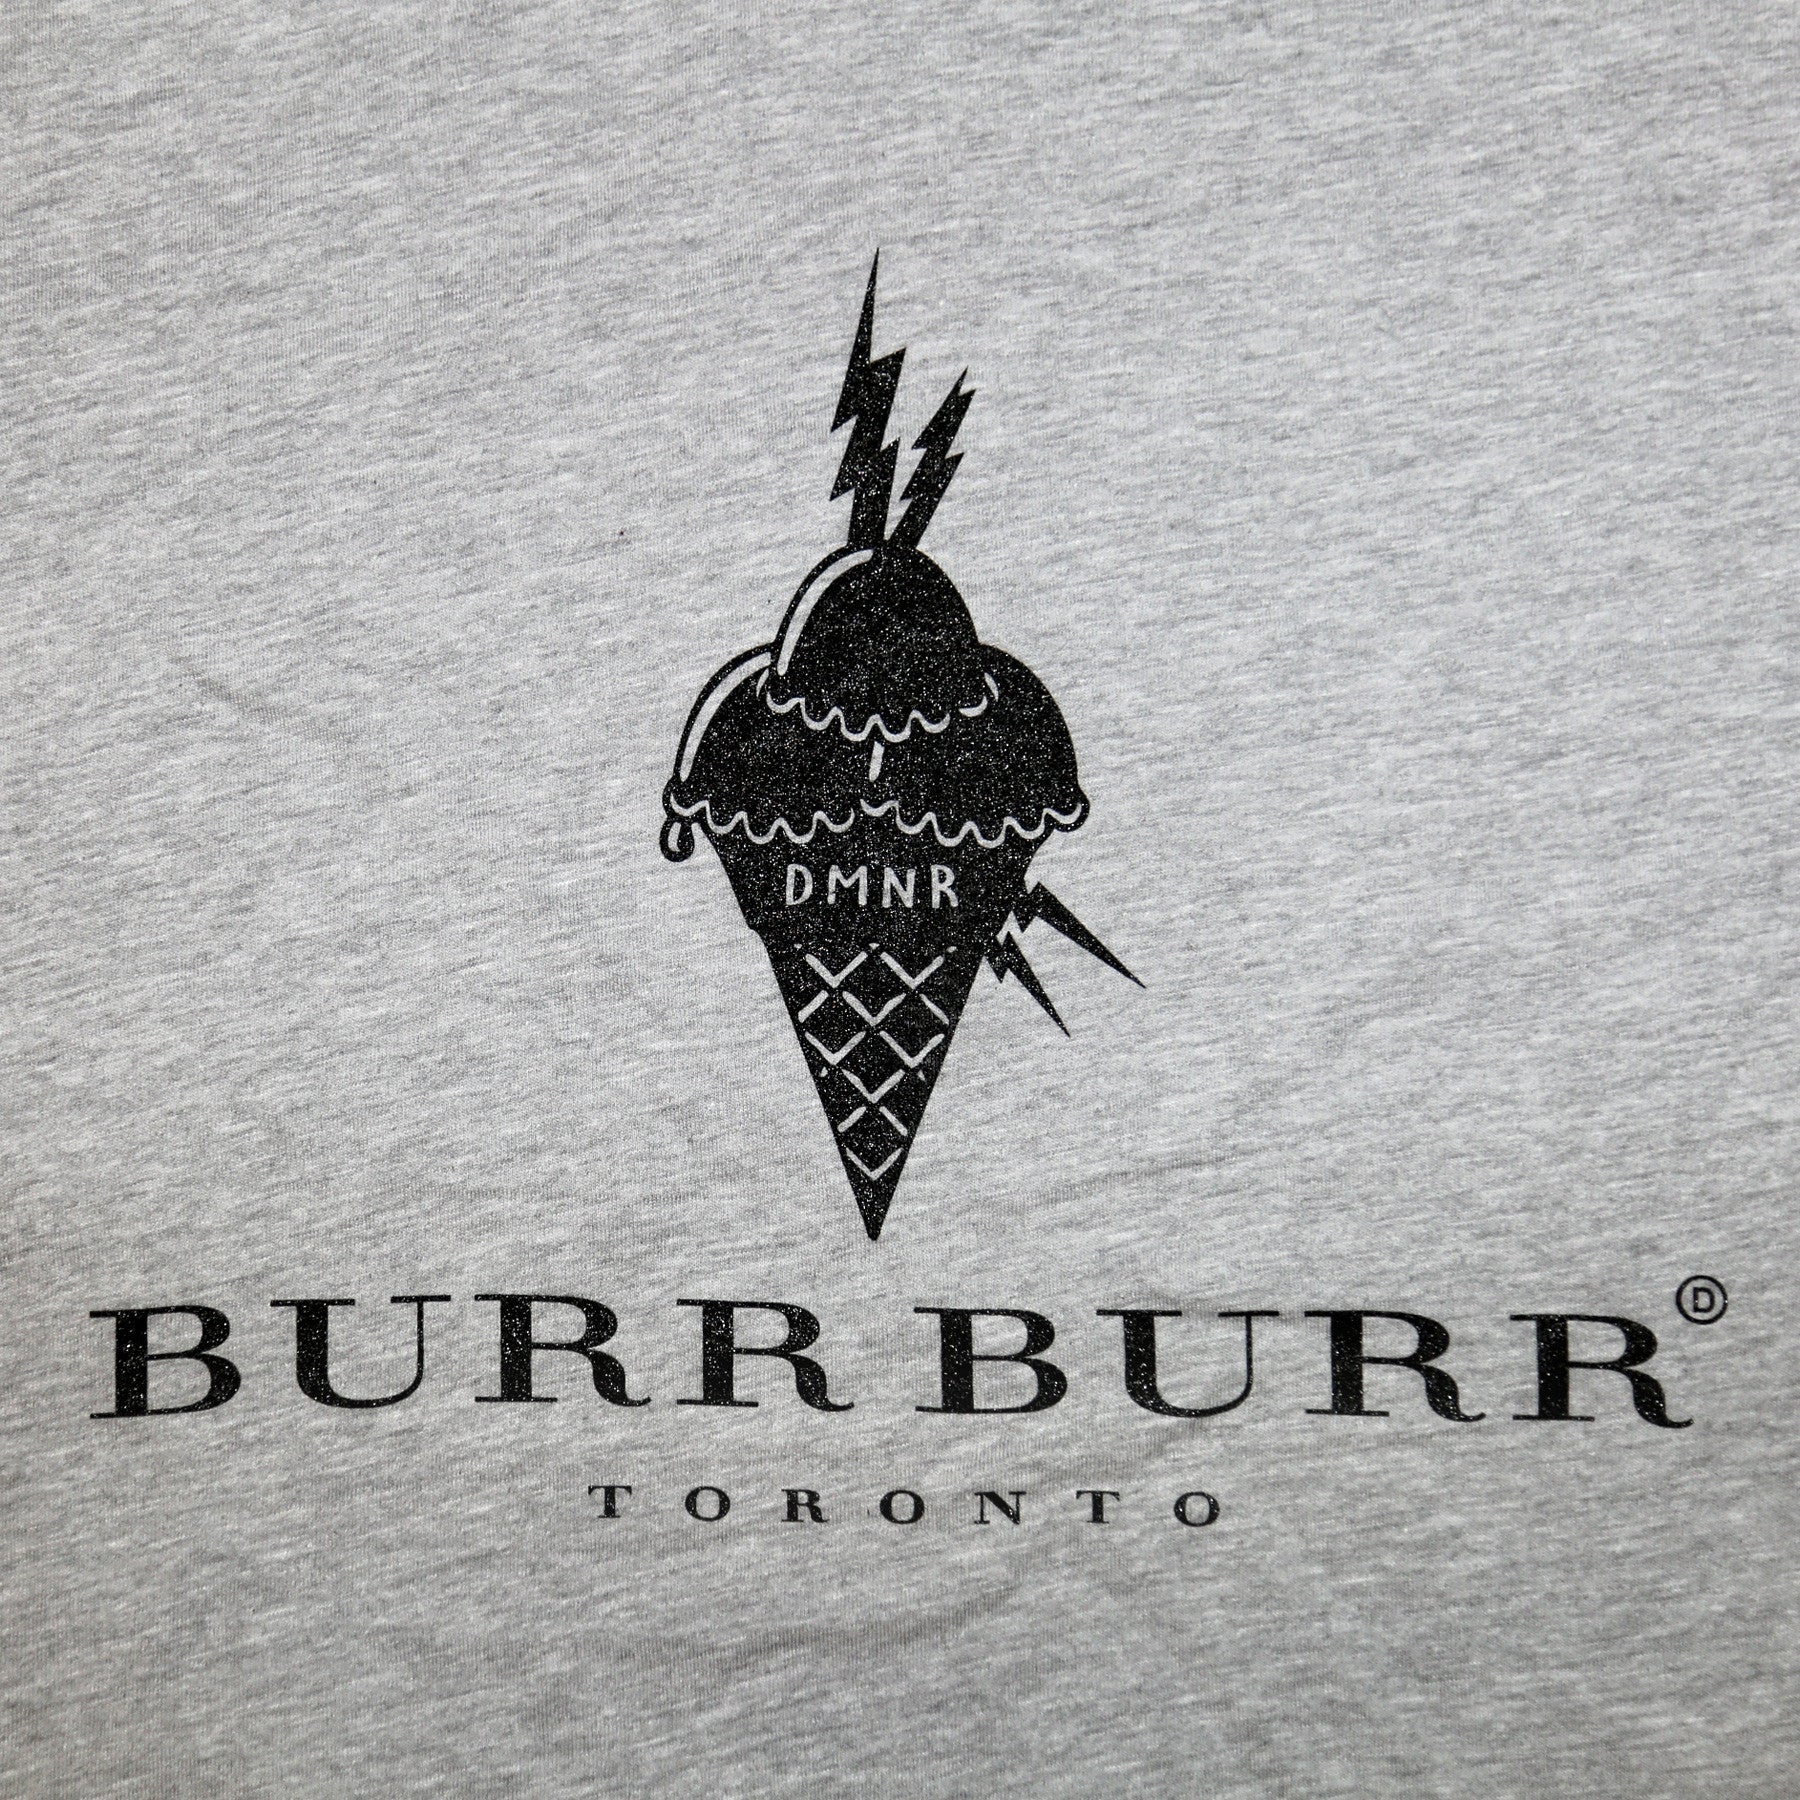 Burr Burr Tee - DEMEANOIR - 1